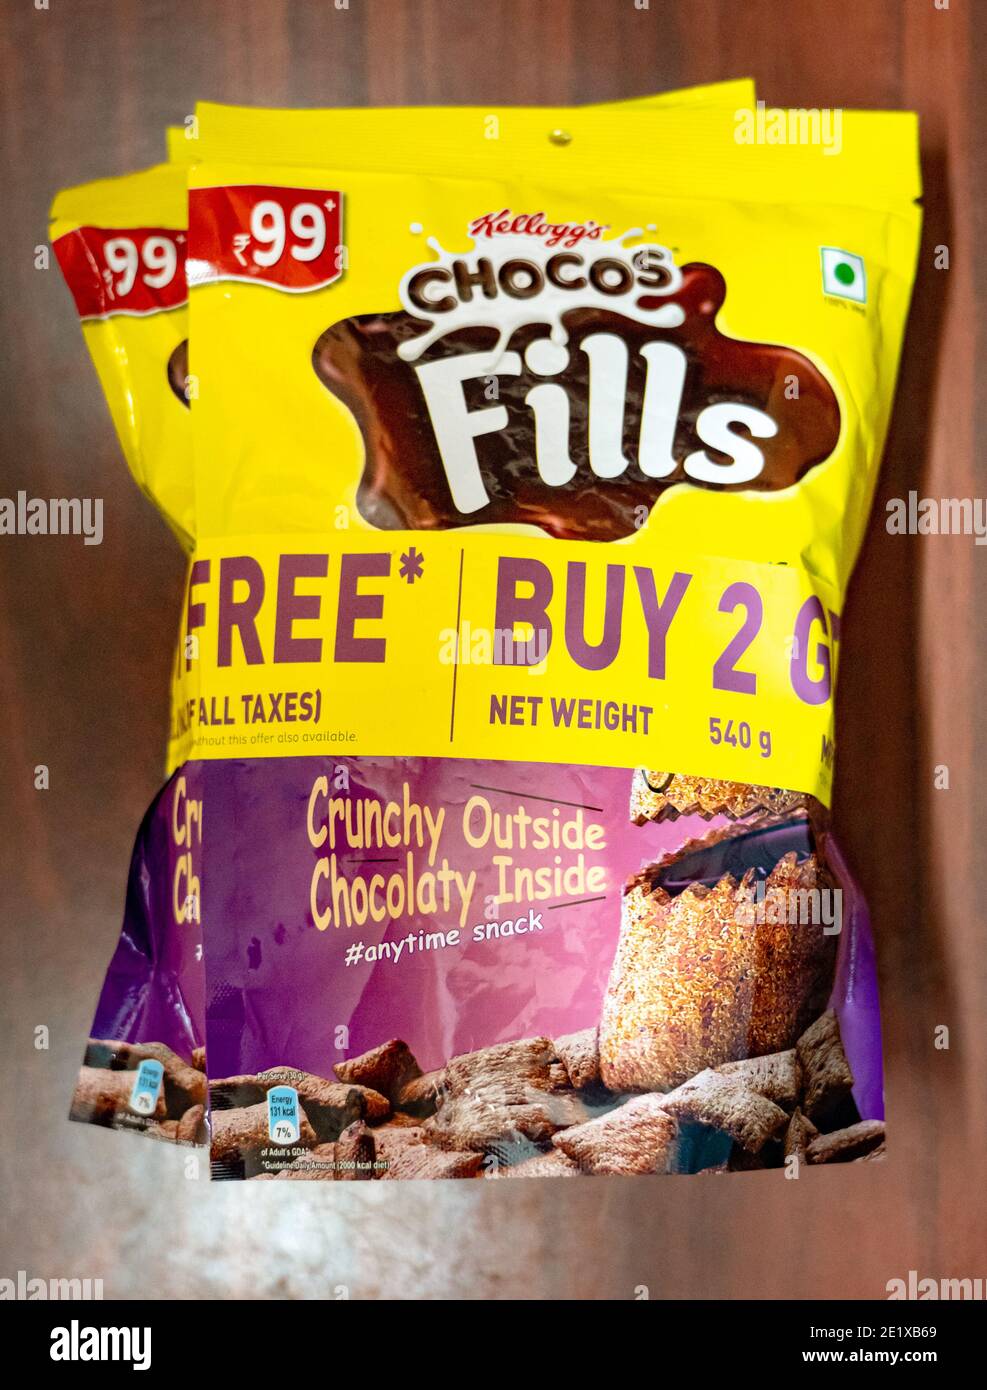 Päckchen Kellogg's Chocos Fills, ein knuspriges Getreide mit schokoladiger Innenseite, auf einem Holzhintergrund. Stockfoto